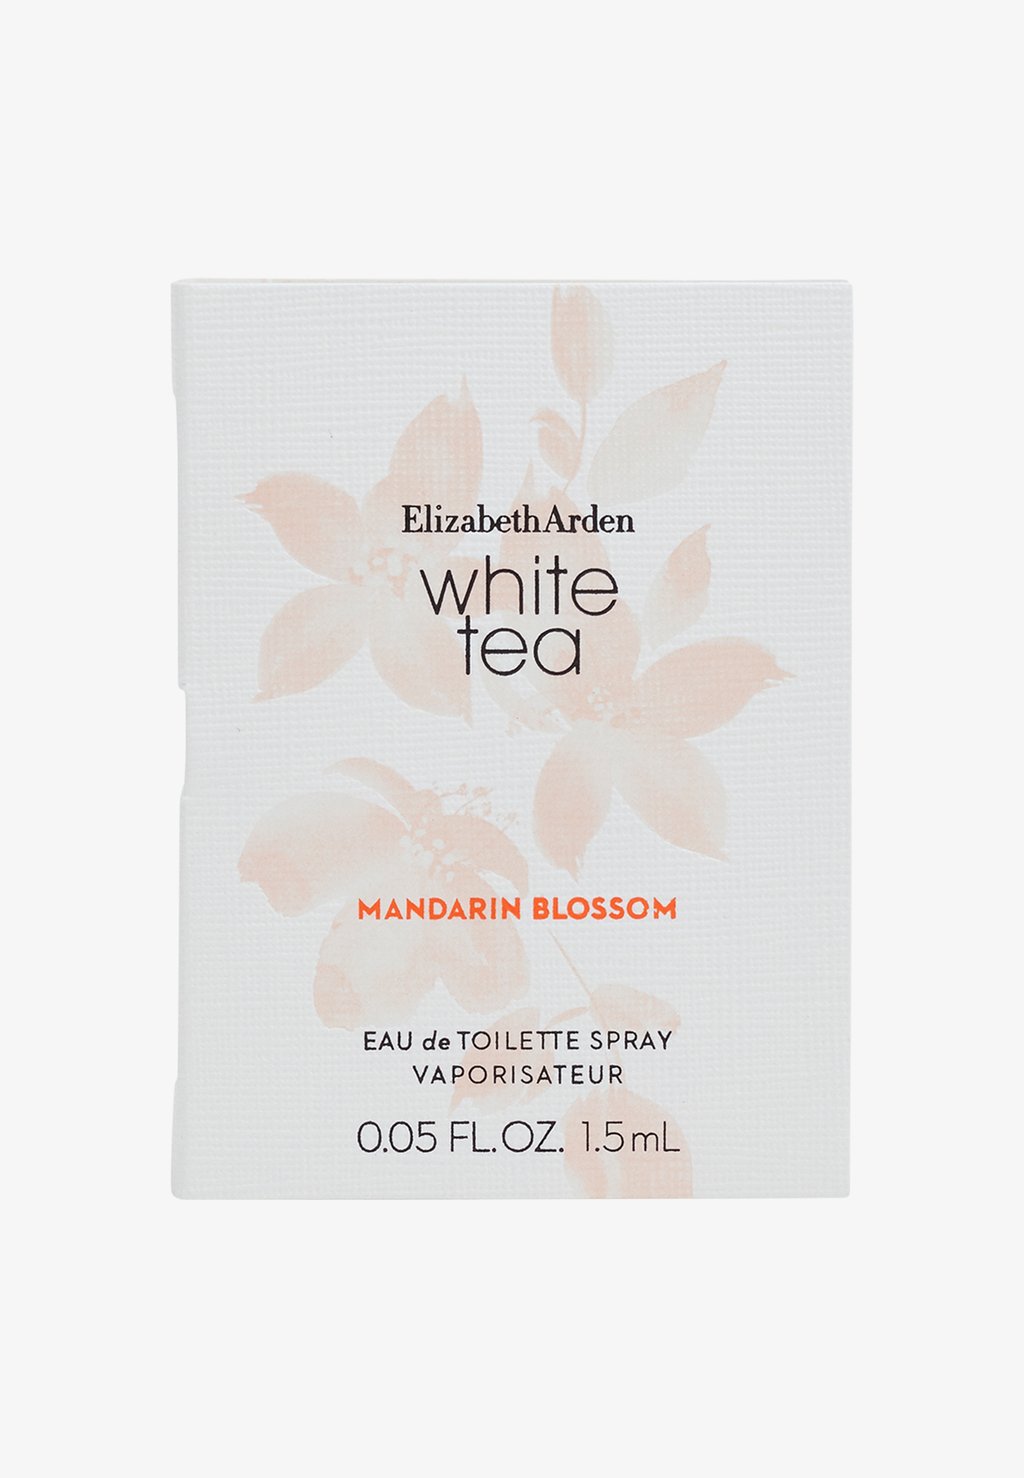 Туалетная вода White Tea Mandarin Blossom Edt Elizabeth Arden white tea mandarin blossom туалетная вода 30мл